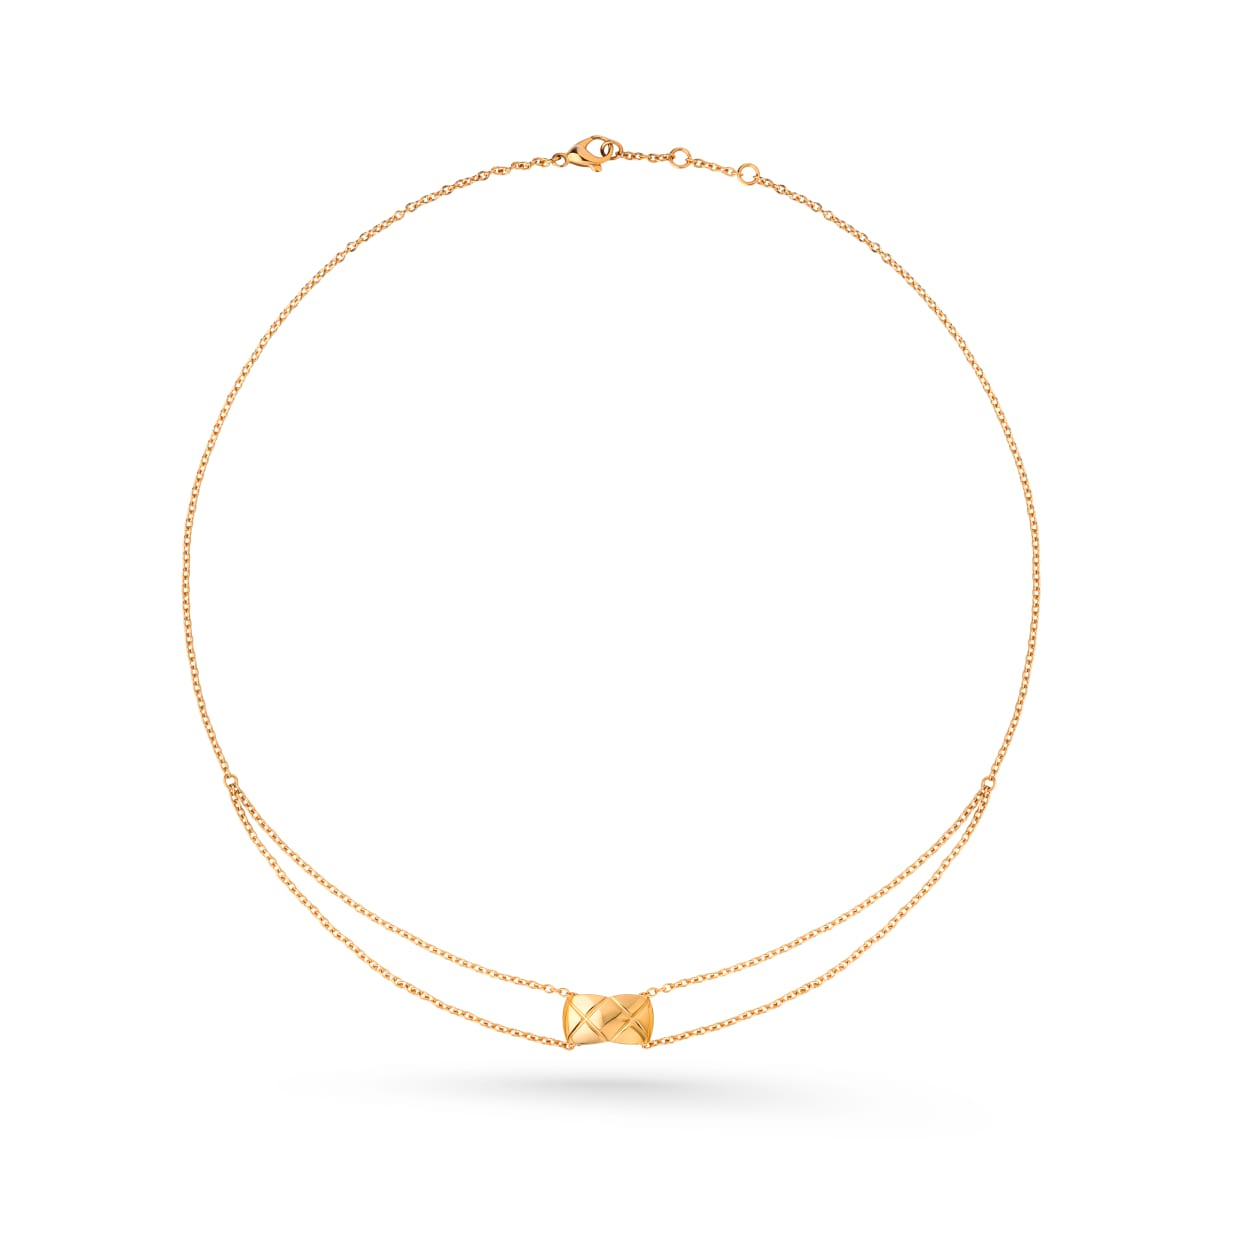 Motivo acolchado OEM al por mayor, collar de oro amarillo de 18 quilates, diseño personalizado para su fabricante de joyas, joyería OEM/ODM